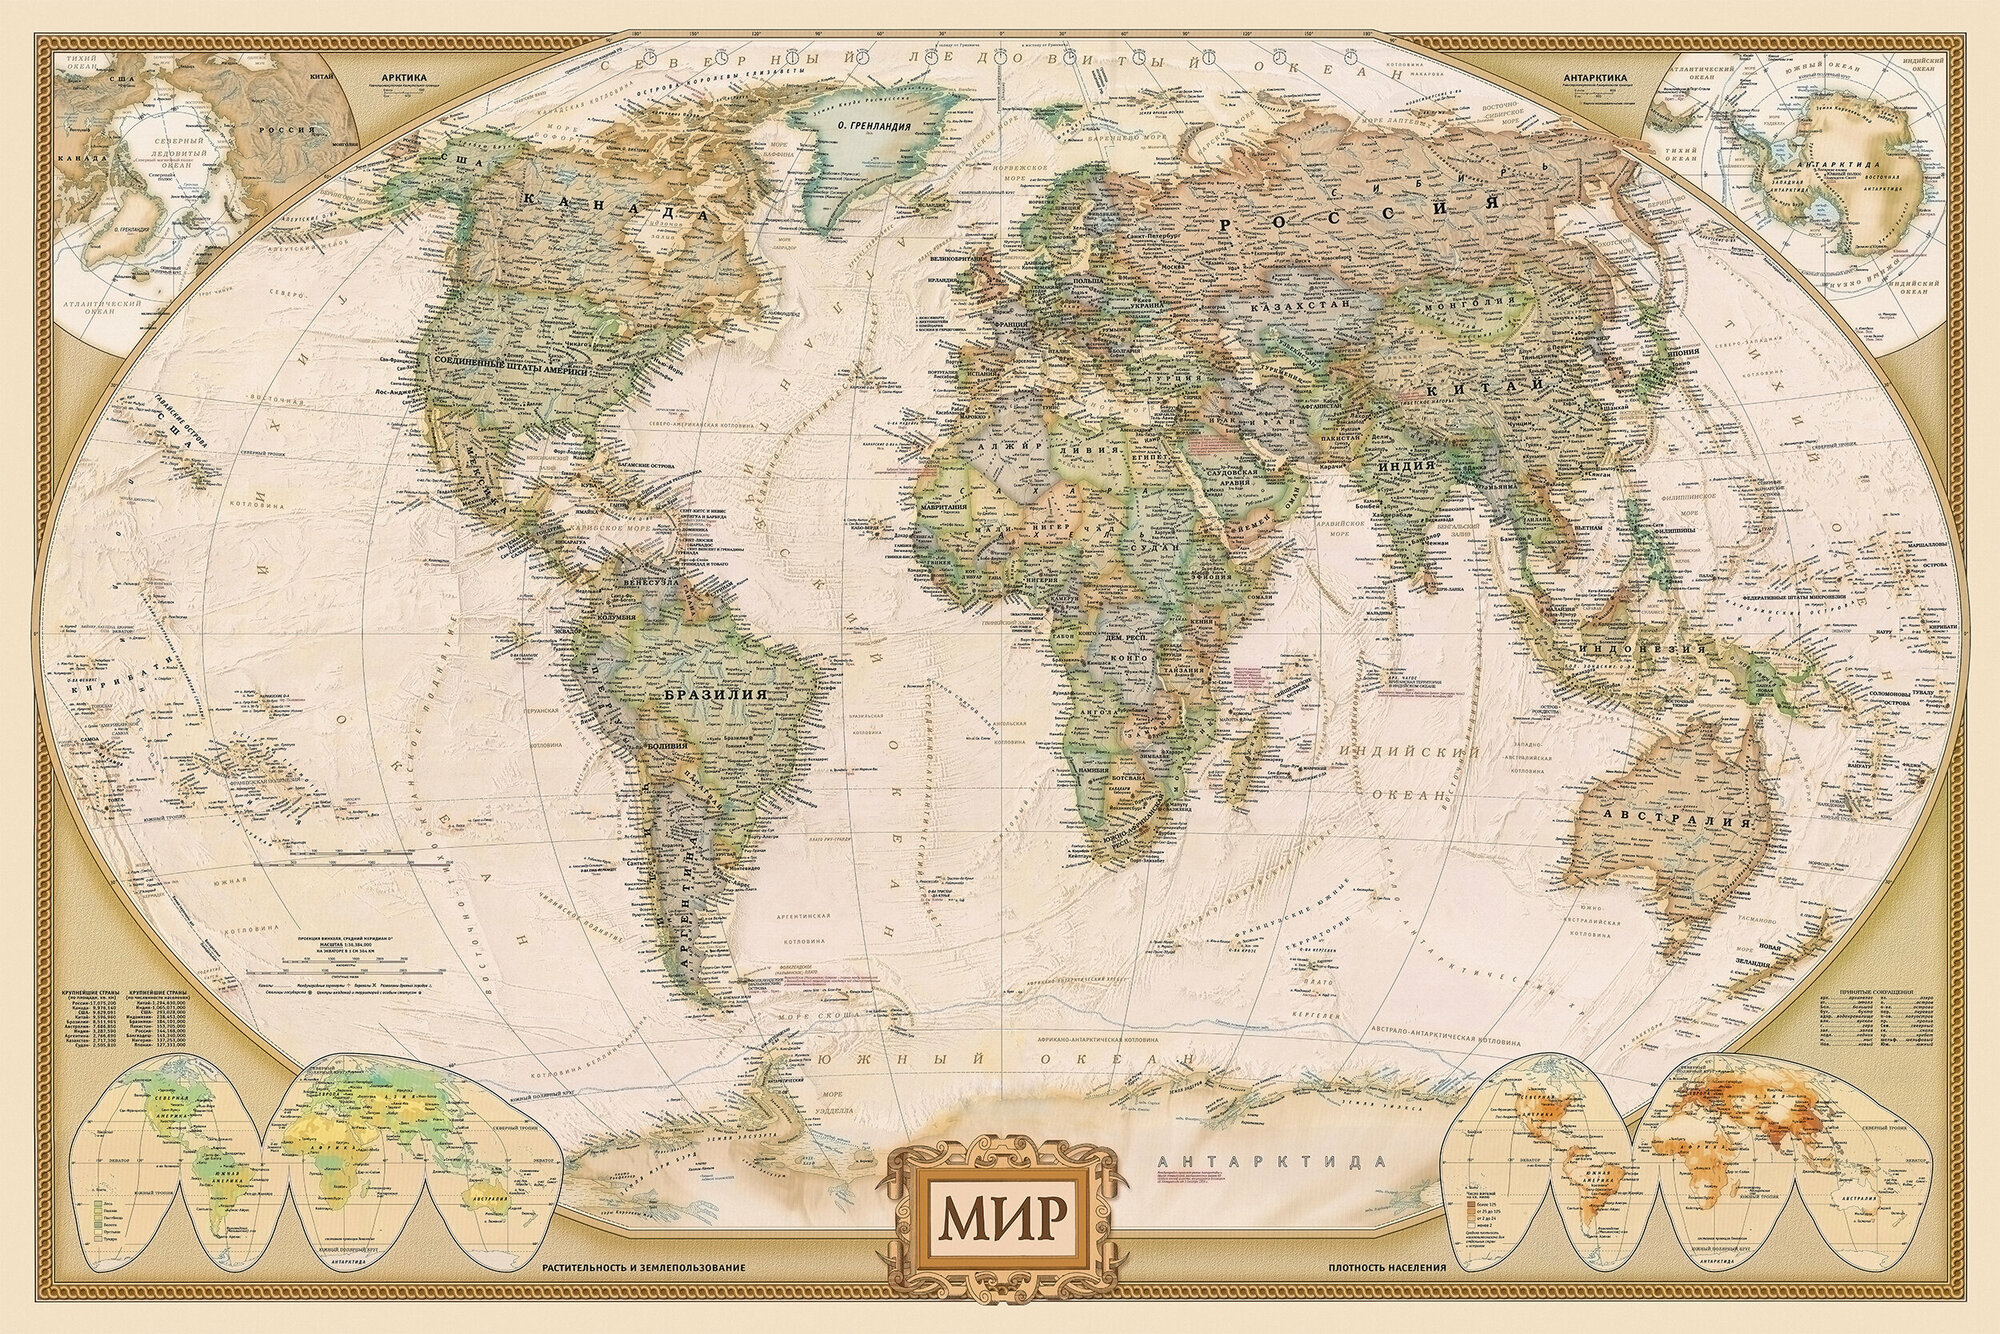 Плакат 150х100см. декоративный, бумажный. Большая политическая карта мира в стиле ретро. С новыми территориями РФ